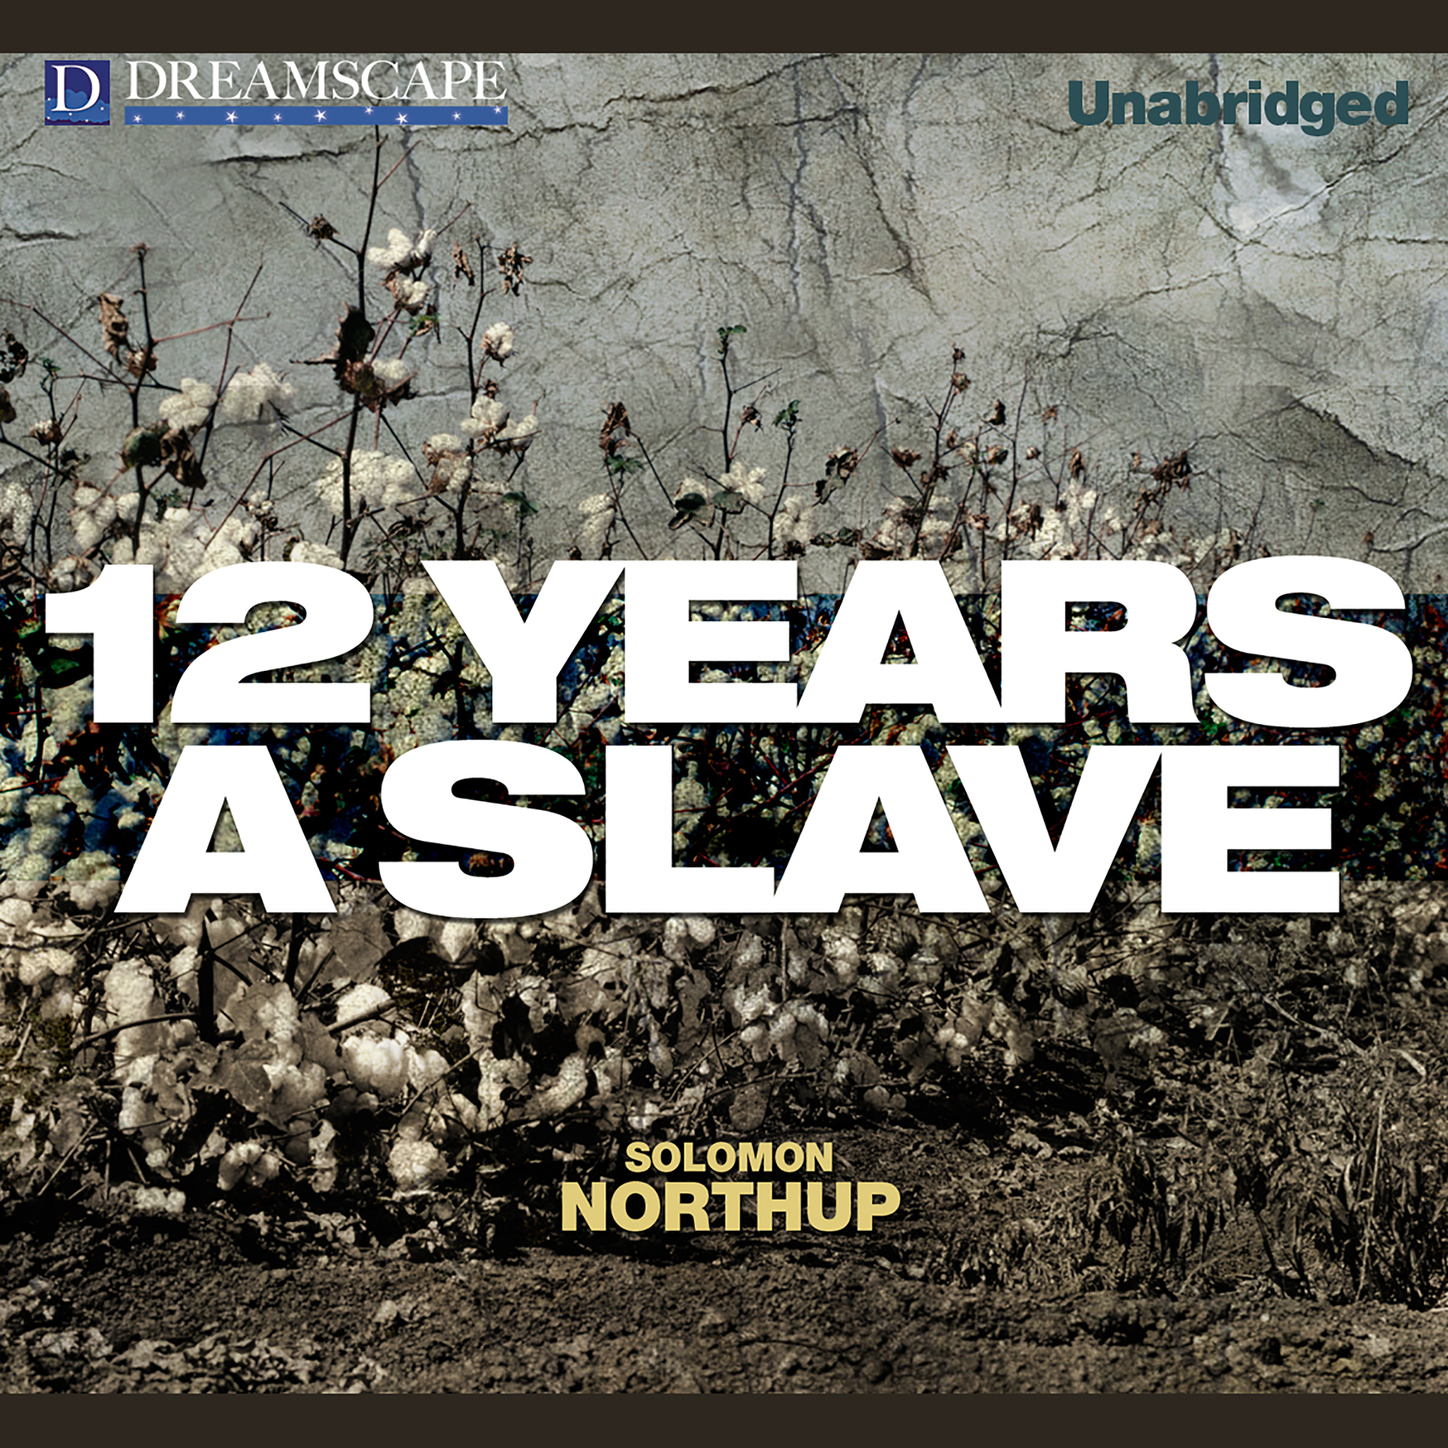 12 Years a Slave (Unabridged)